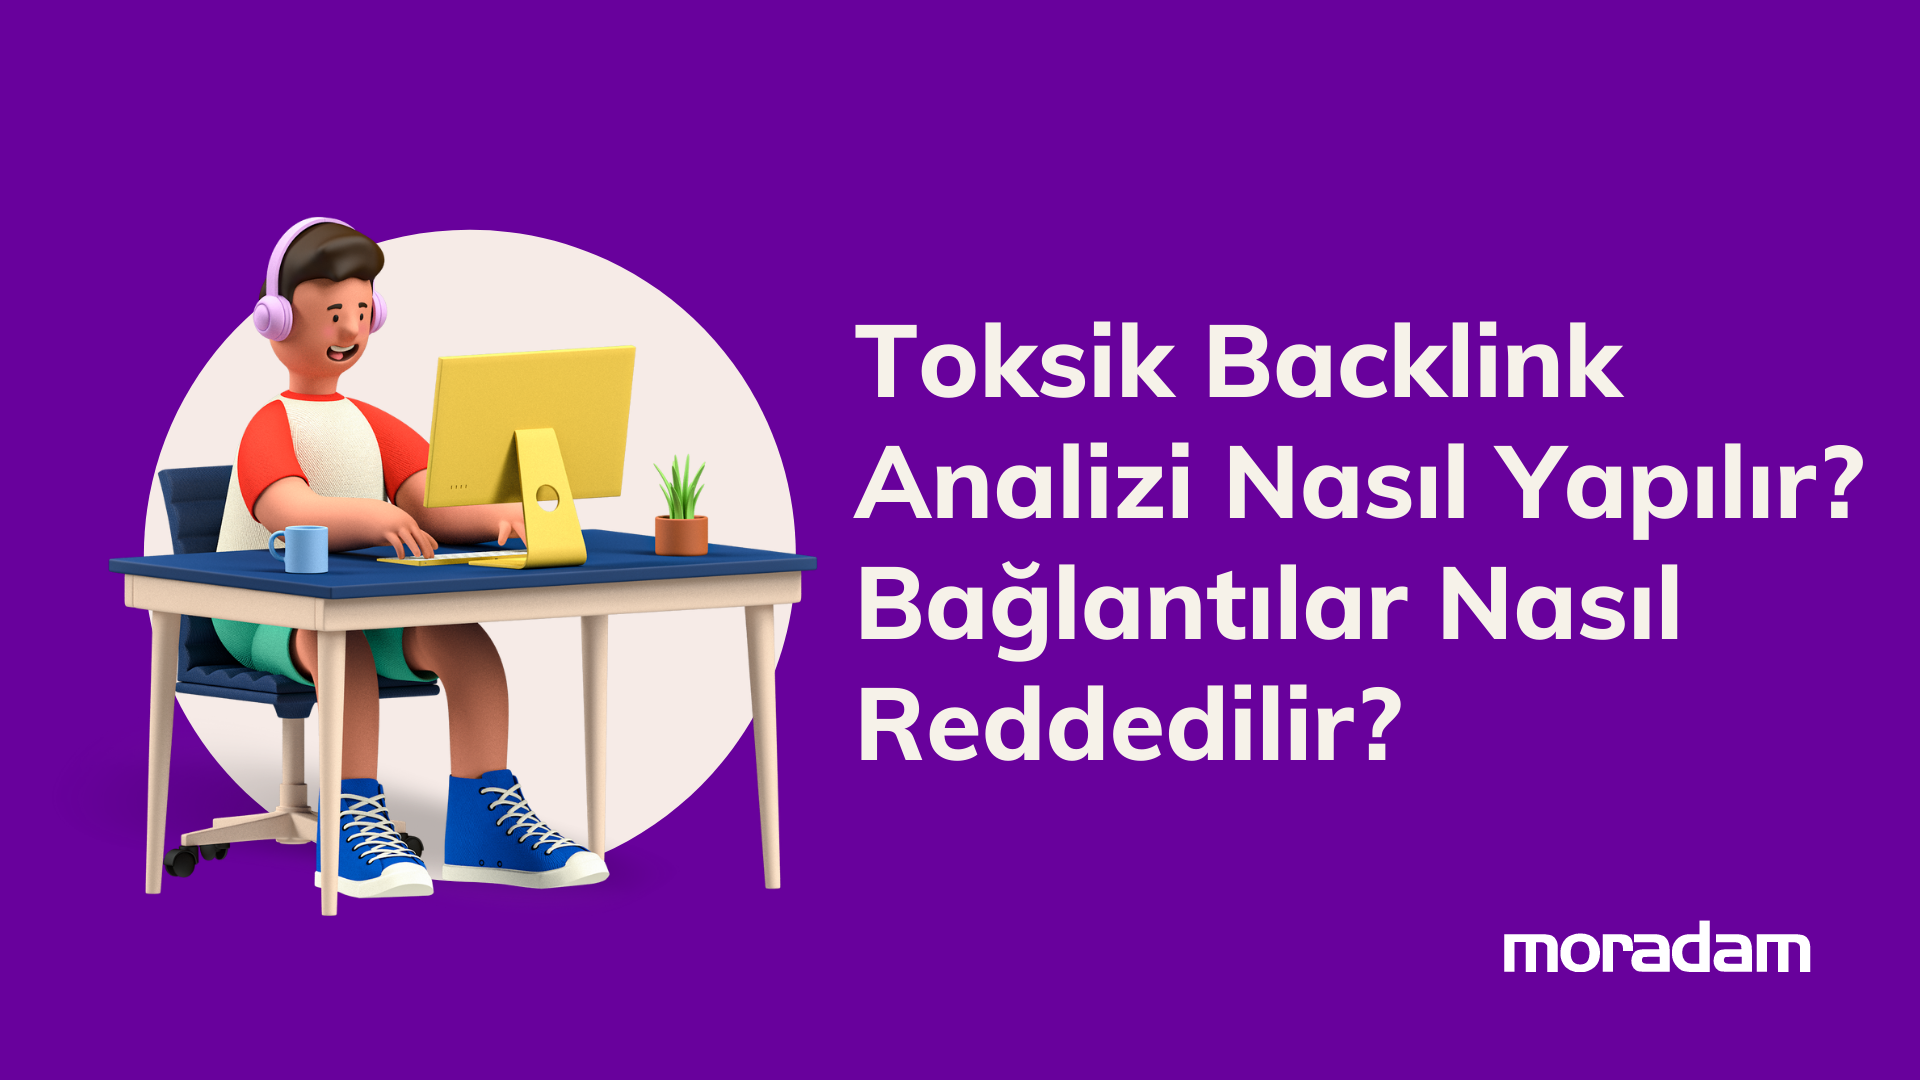 Toksik Backlink Analizi Nasıl Yapılır? ve Toksik Backlinkler Nasıl Reddedilir?